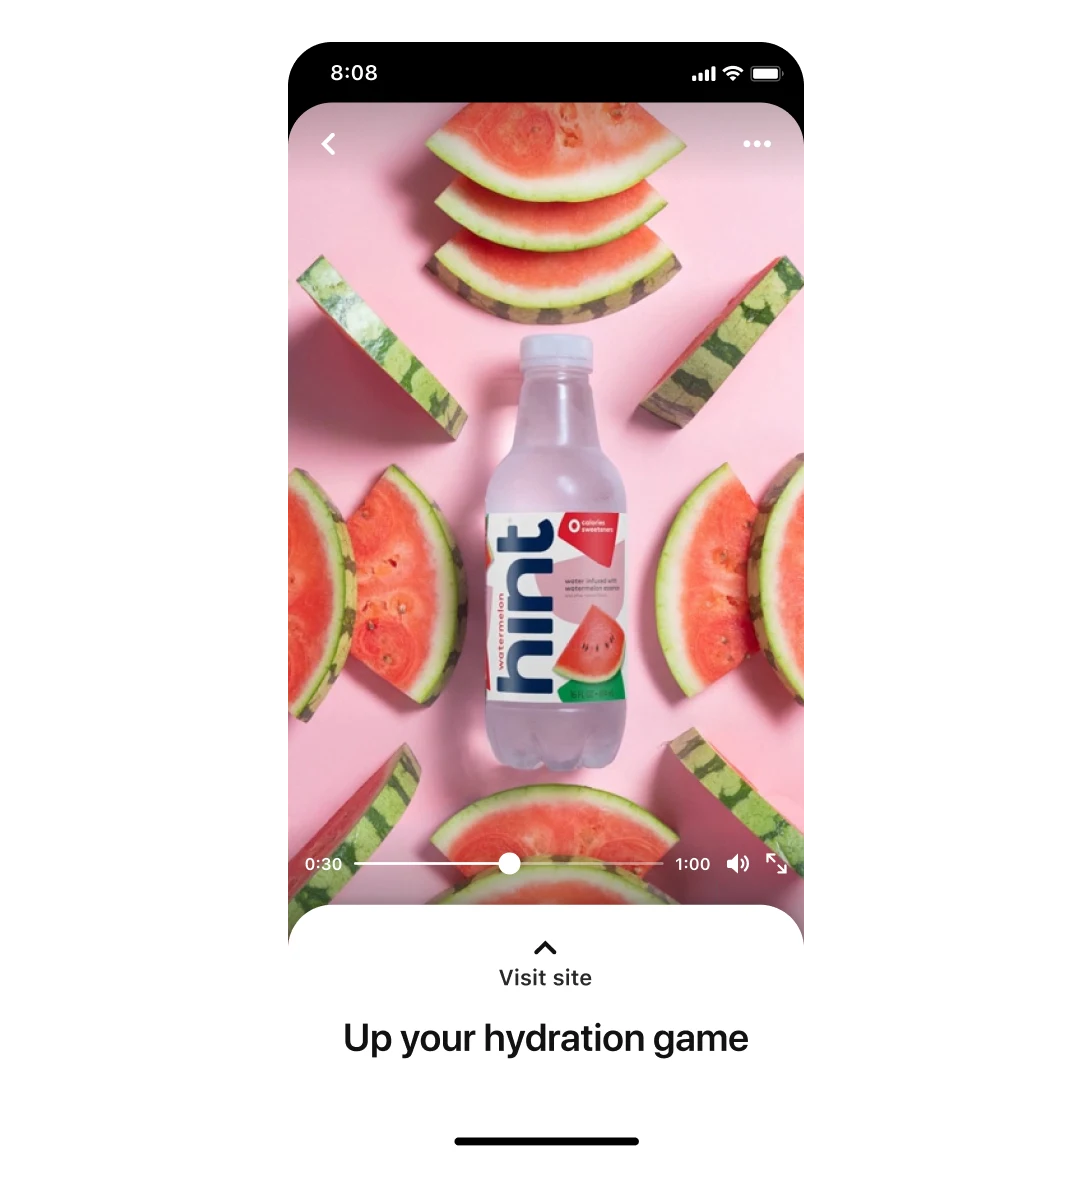 एक मोबाइल स्क्रीन पर hint का प्रीमियर स्पॉटलाइट विज्ञापन, जिसमें तरबूज़ की फांकों से घिरे तरबूज़ के फ़्लेवर वाले पानी का दृश्य है। कैप्शन में लिखा है, "अपने हाइड्रेशन को कम न होने दें।"